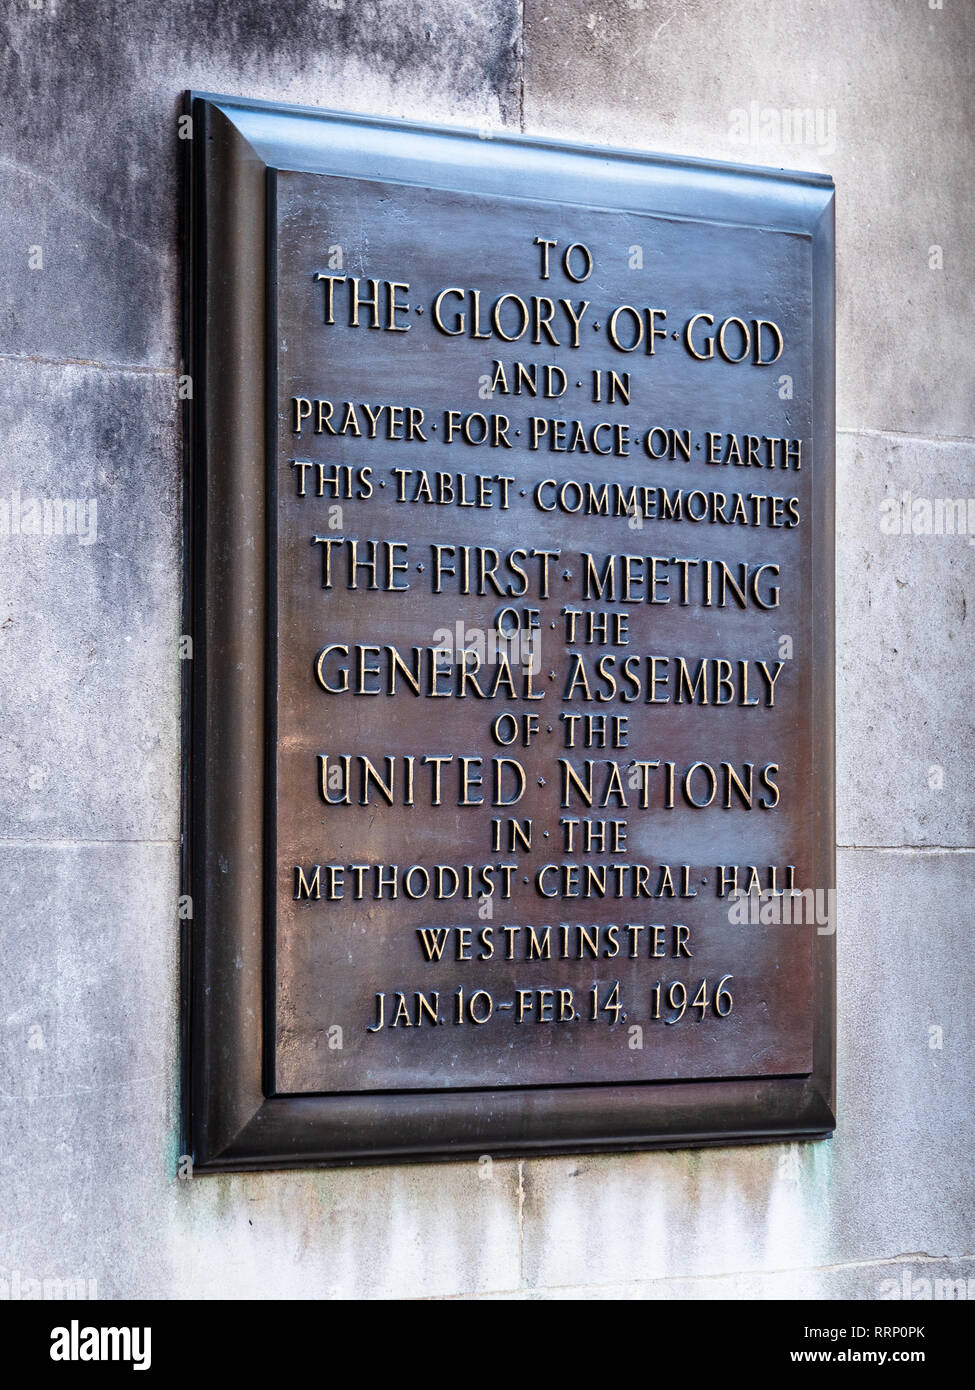 Hall Central méthodiste Assemblée Générale des Nations Unies - Plaque commémorant la première réunion de l'Assemblée générale des Nations Unies tenue à l'Hall à Londres en 1946 Banque D'Images